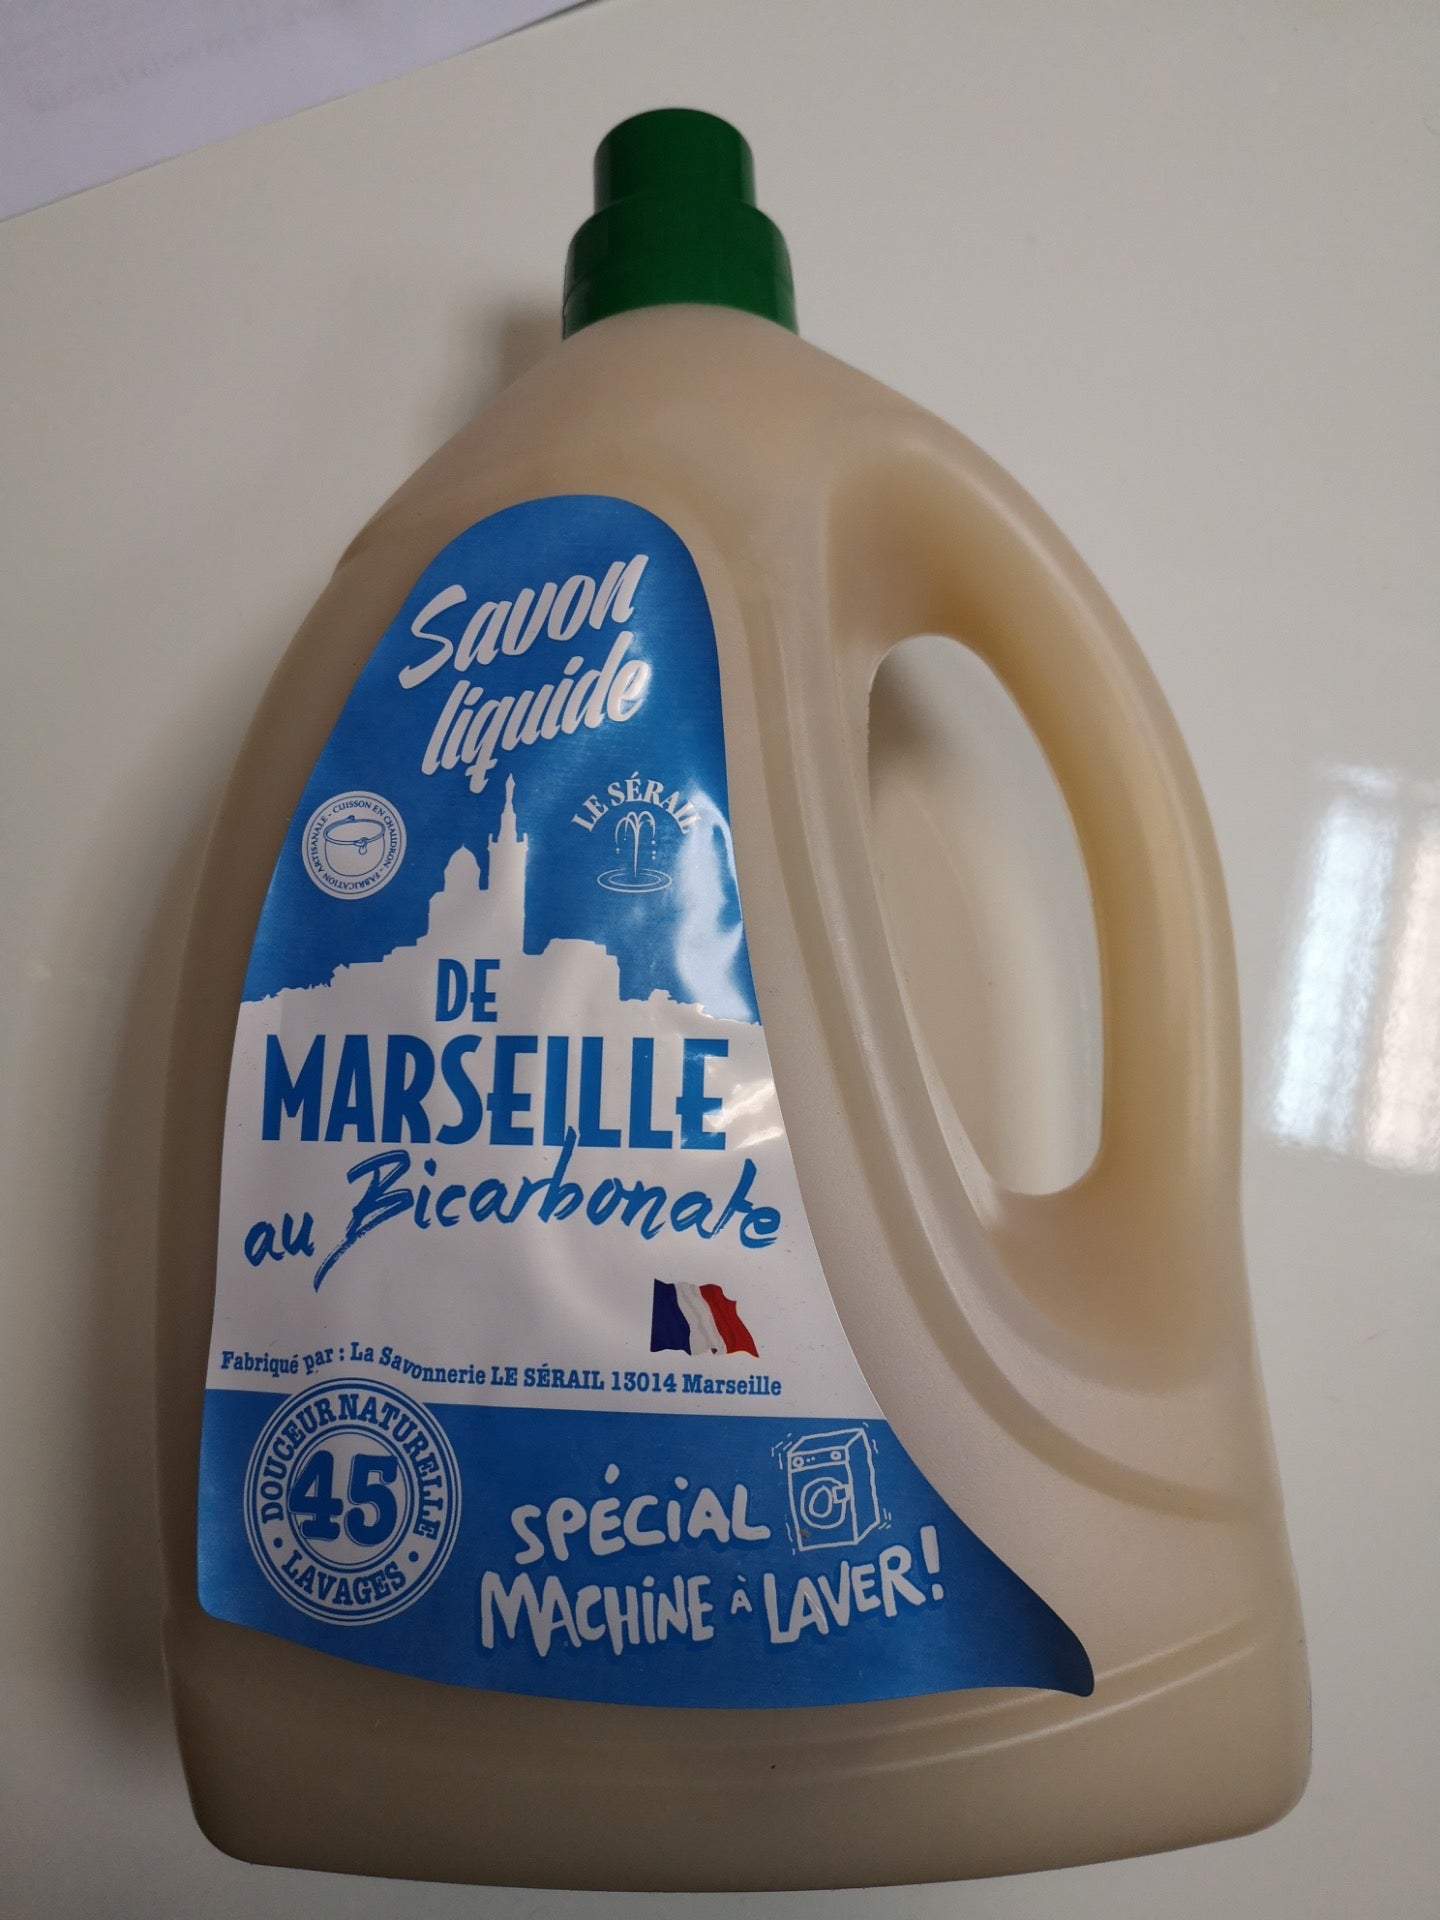 Lessive liquide au savon de marseille 3L